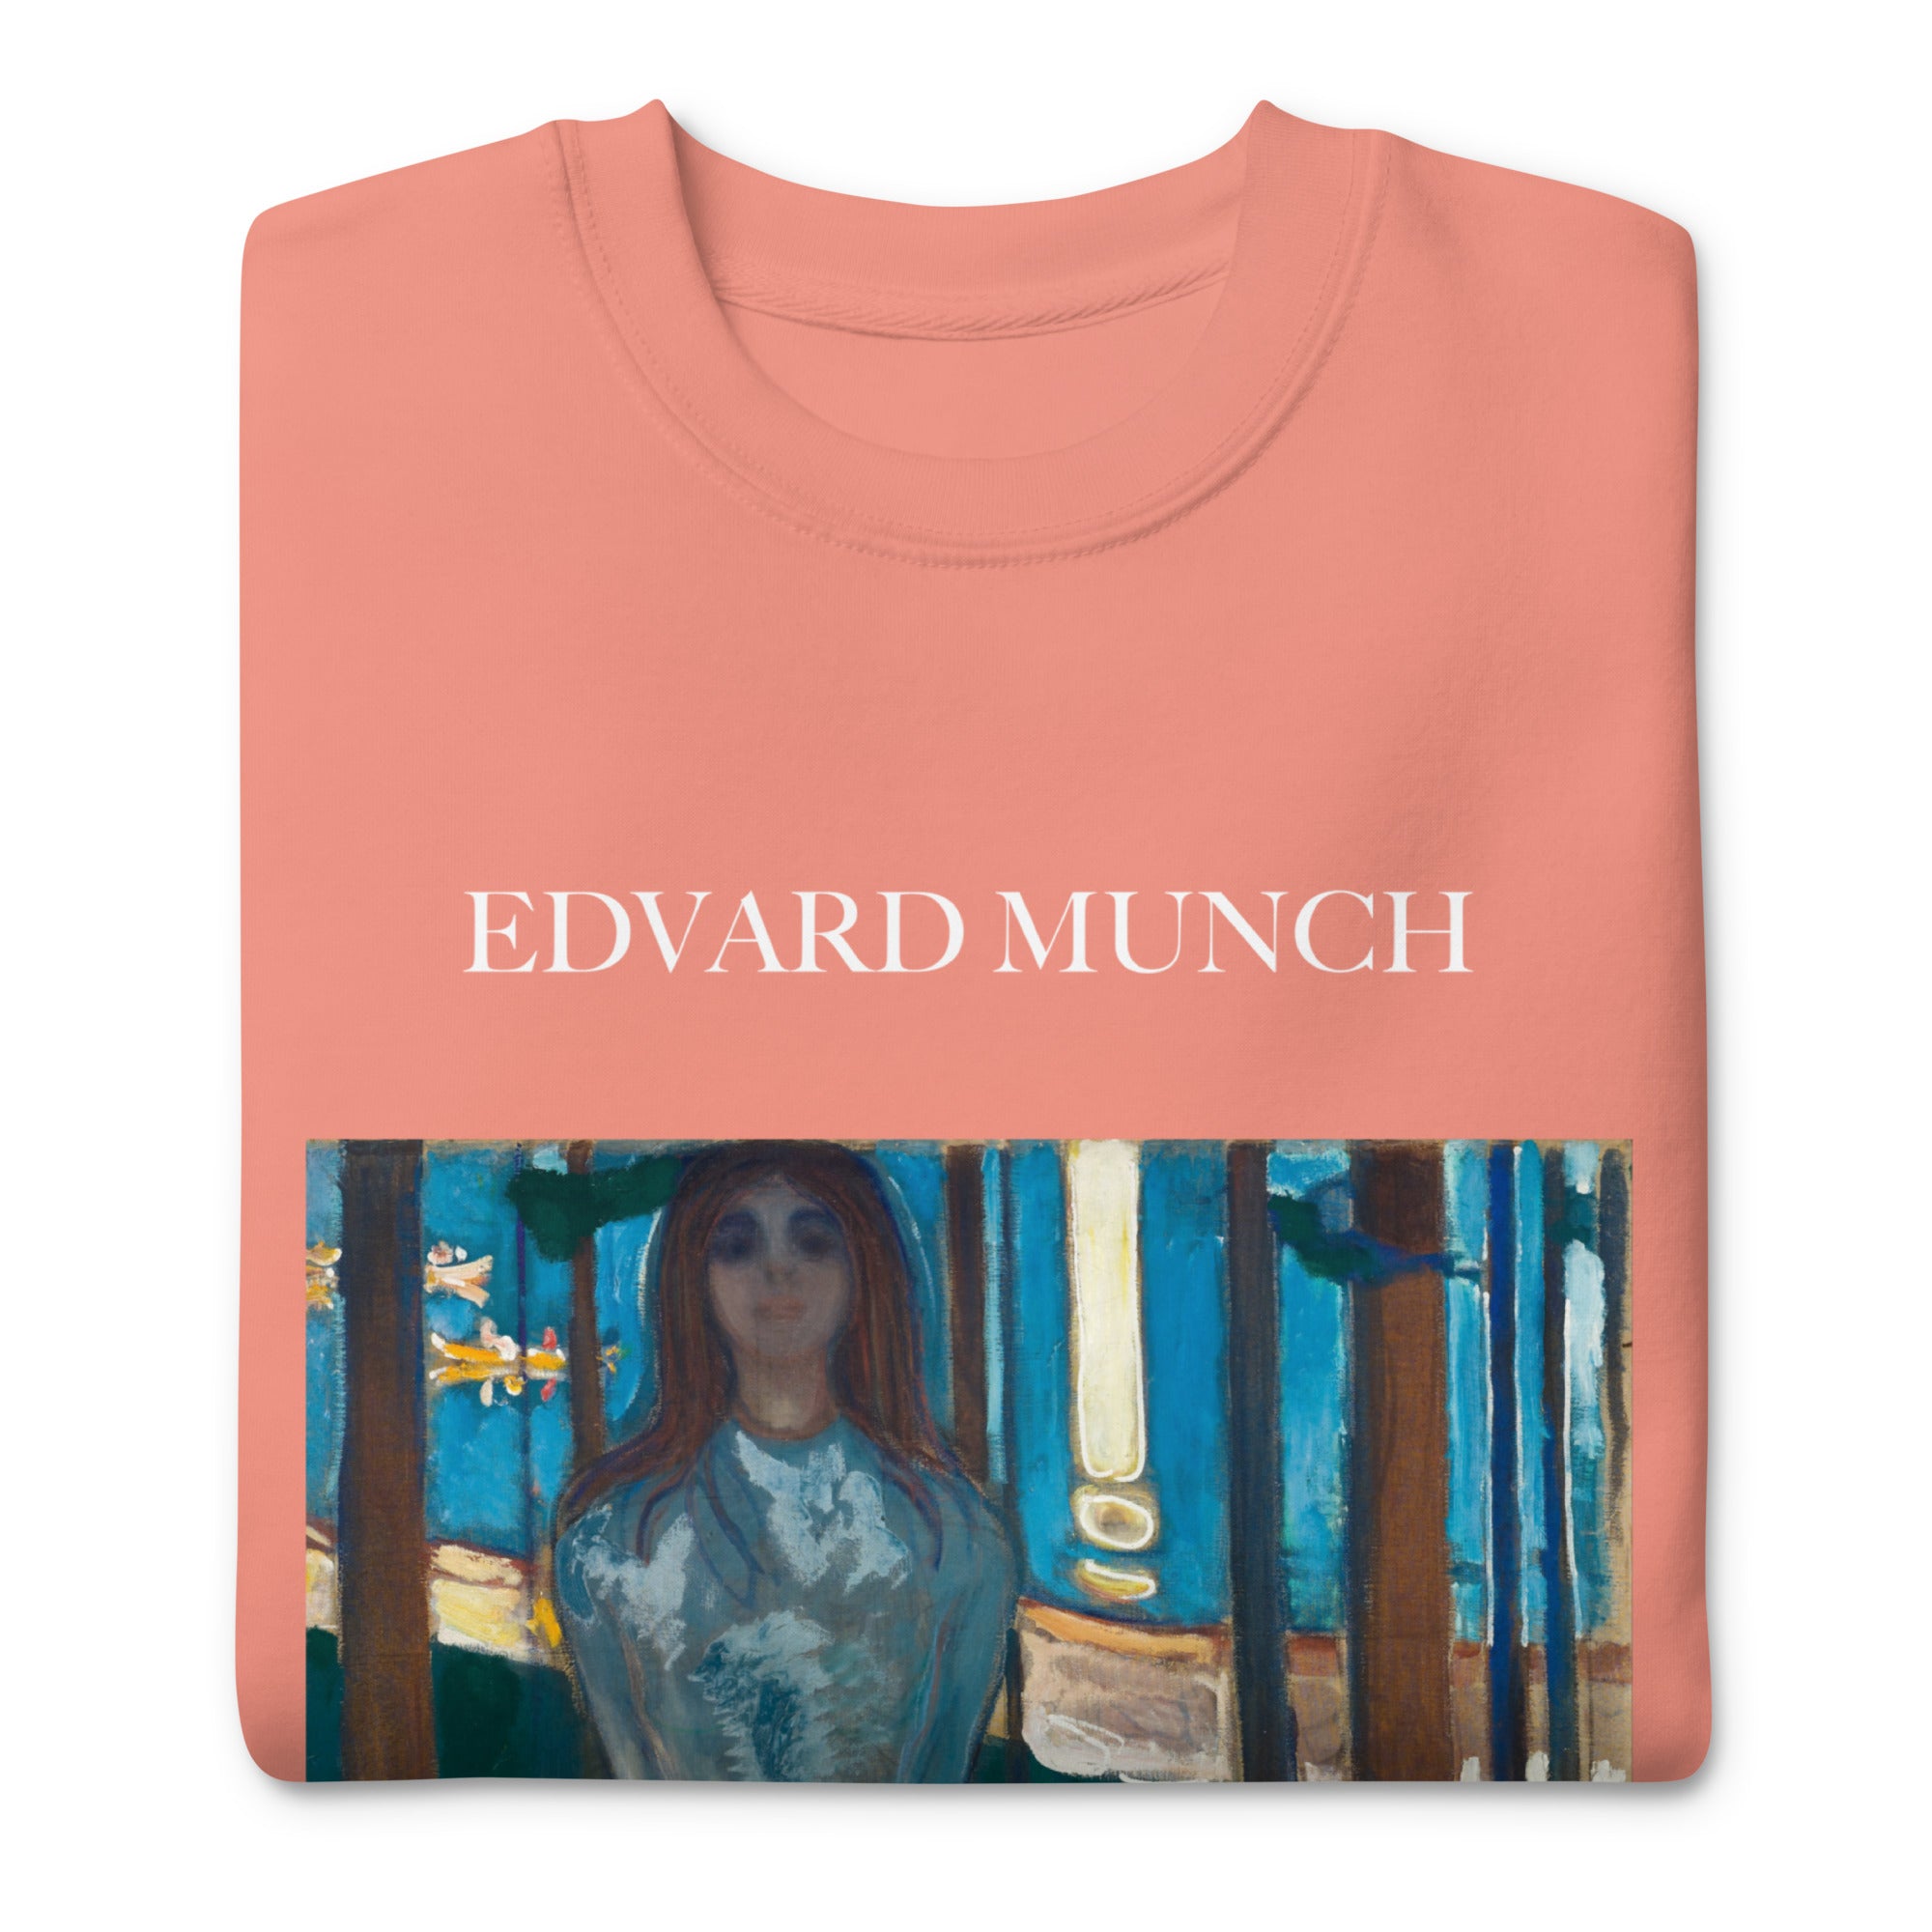 Sweatshirt mit berühmtem Gemälde „Die Stimme, Sommernacht“ von Edvard Munch | Premium-Sweatshirt für Unisex